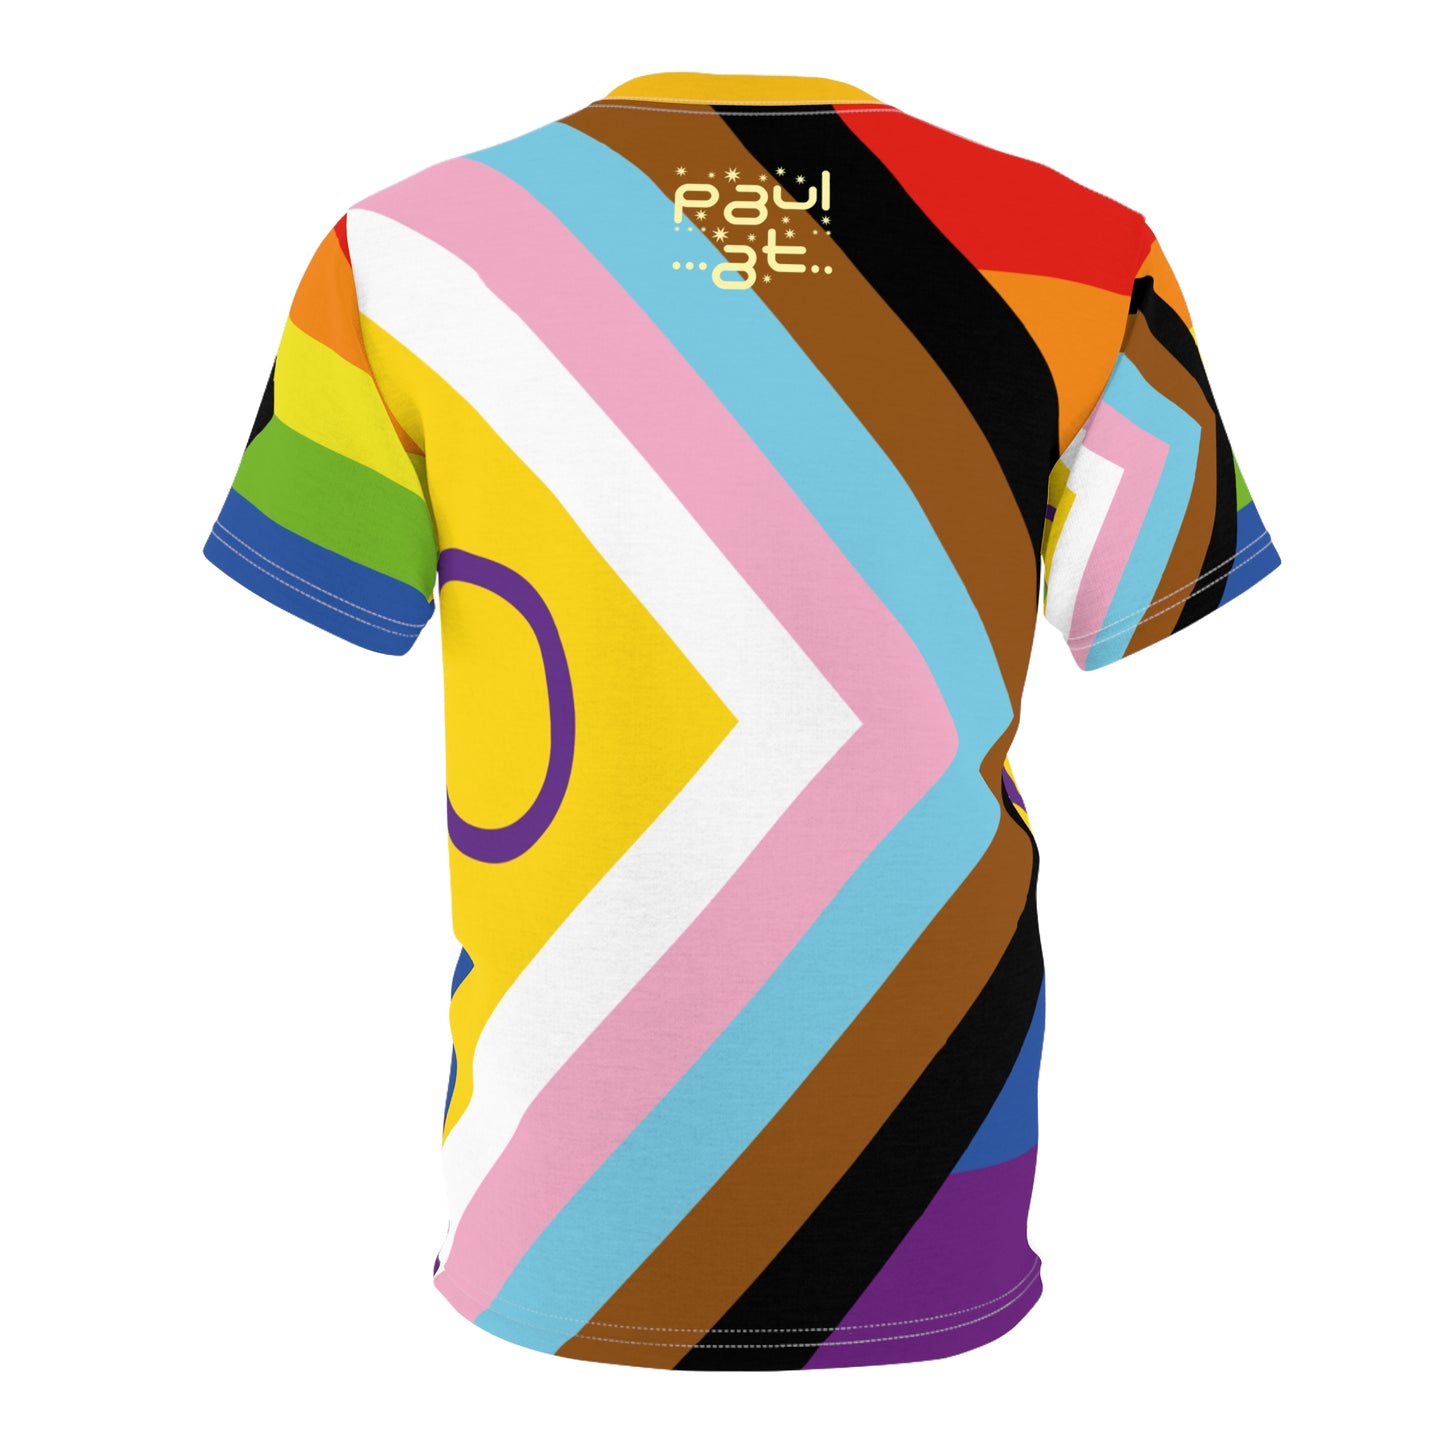 Intersex Inclusive Pride Unisex T-Shirt